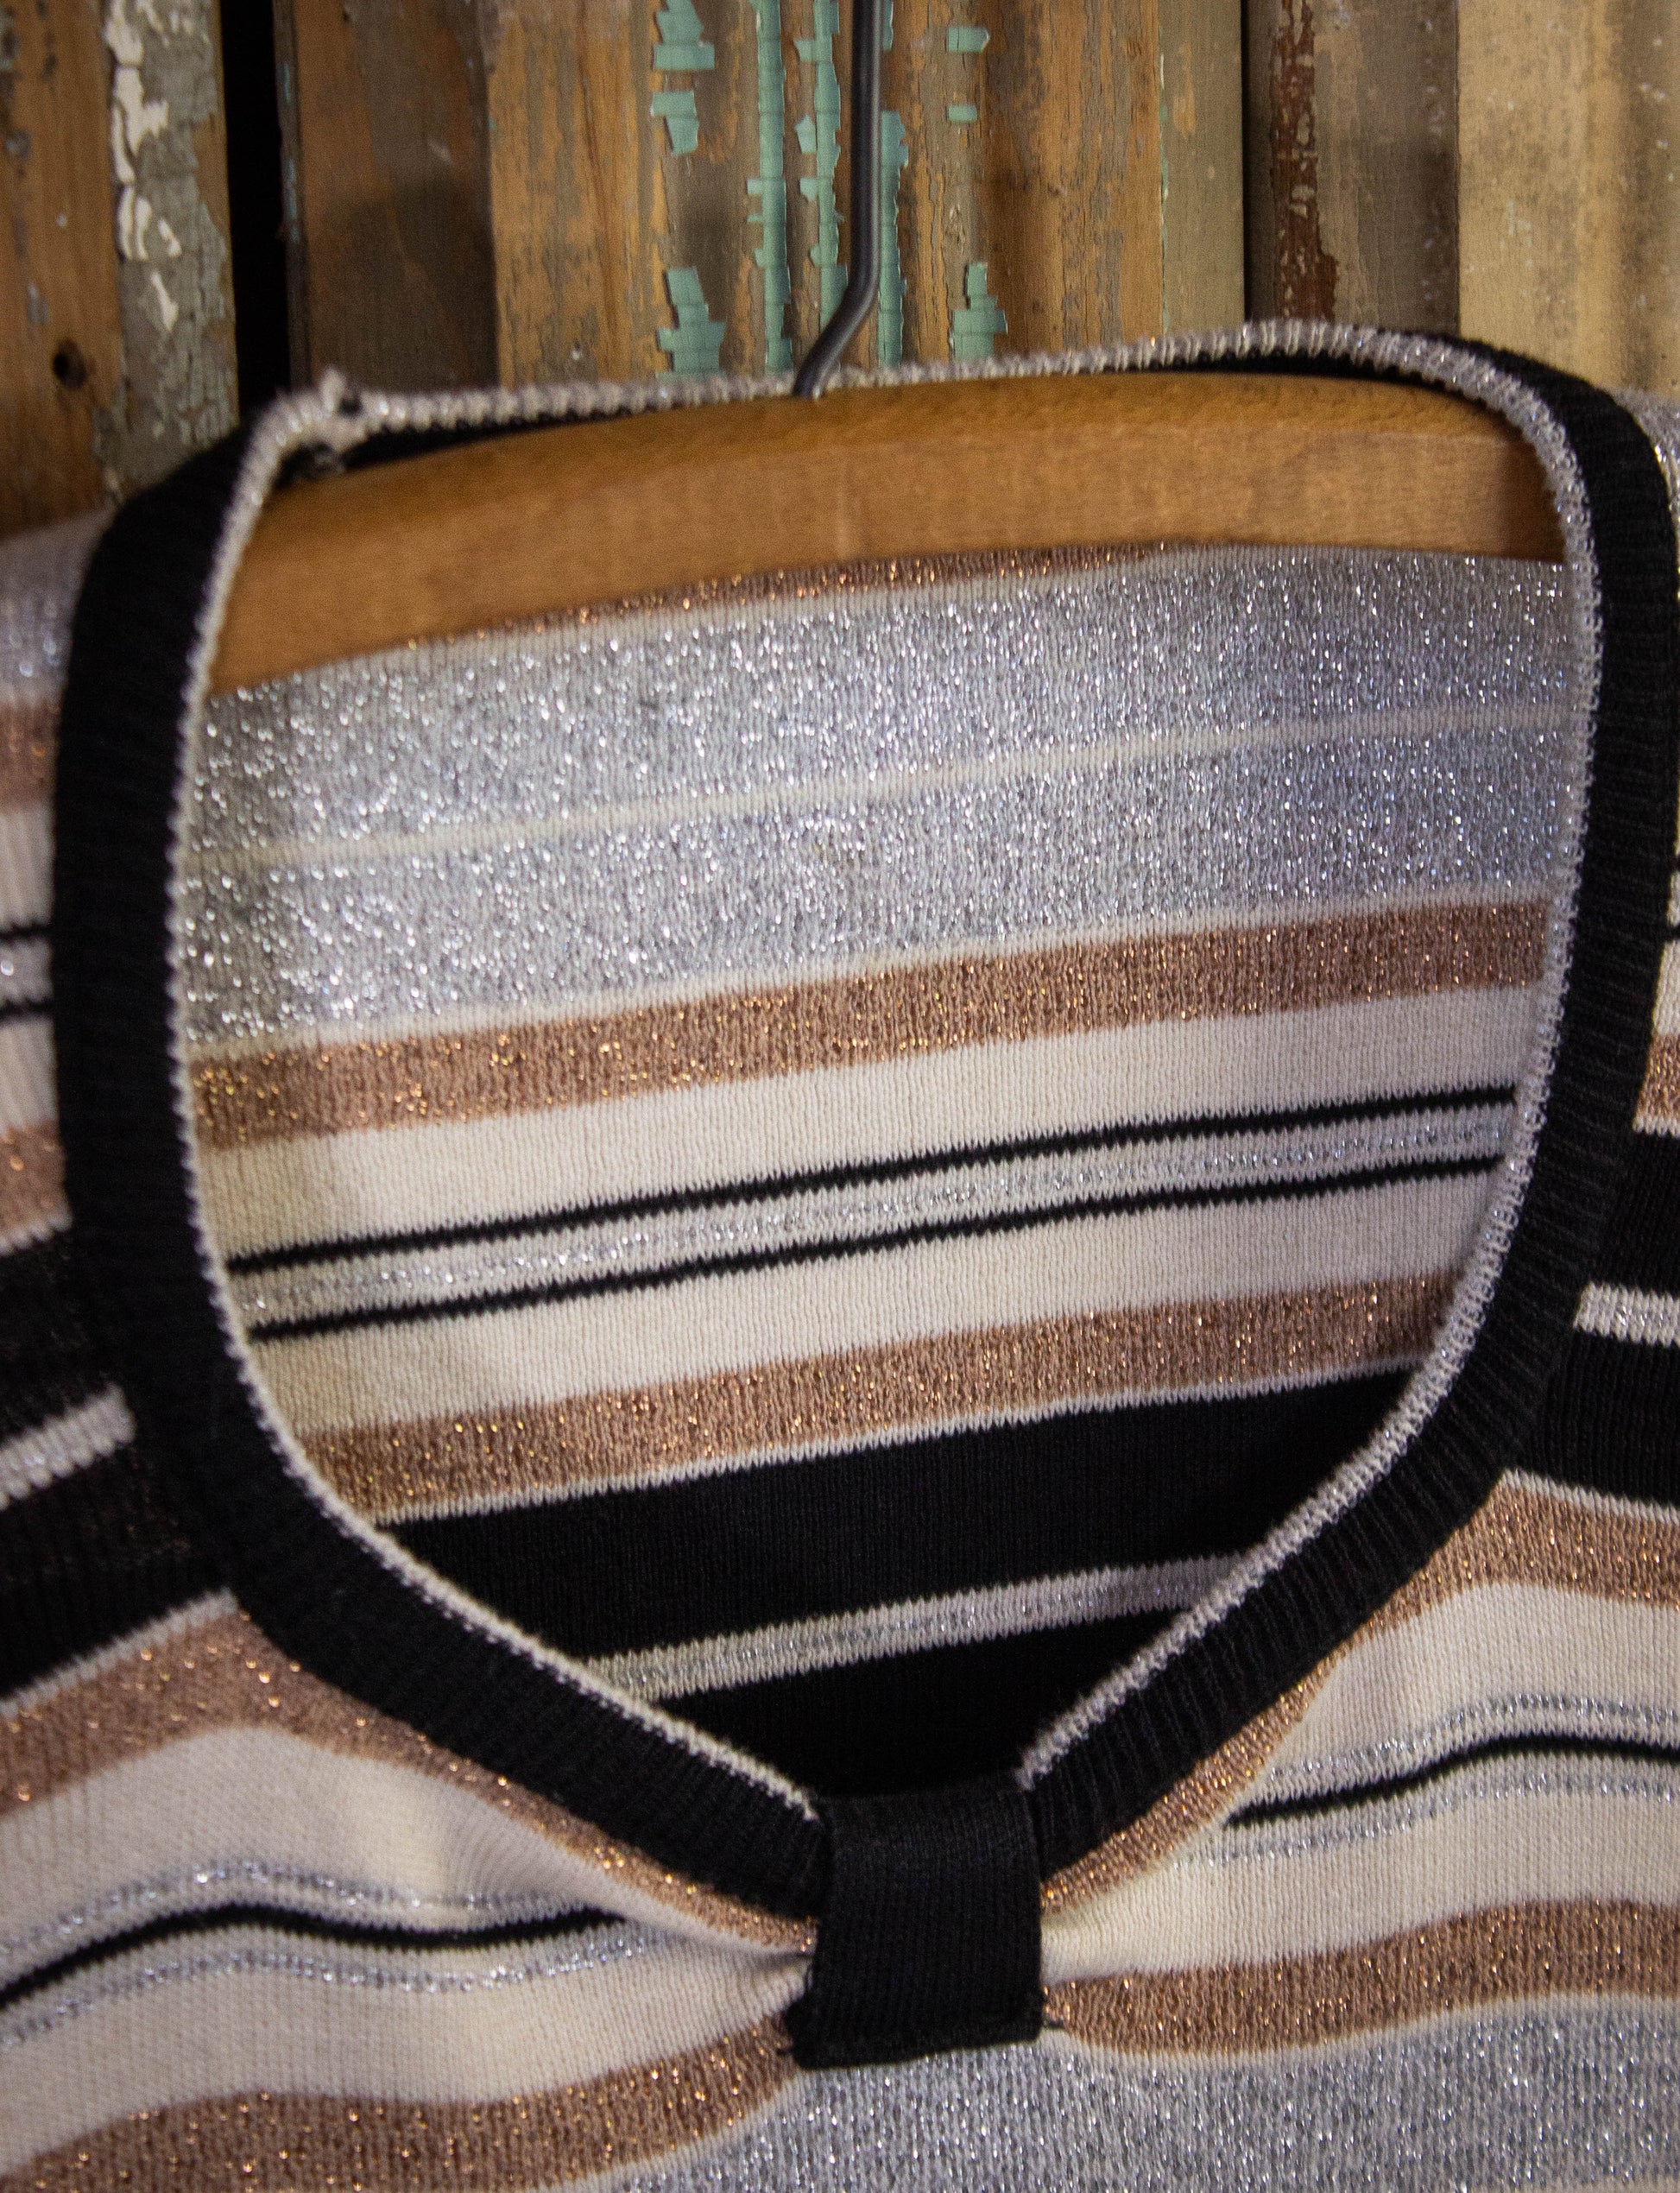 Vintage Women's Glitter Striped Sweater 70s